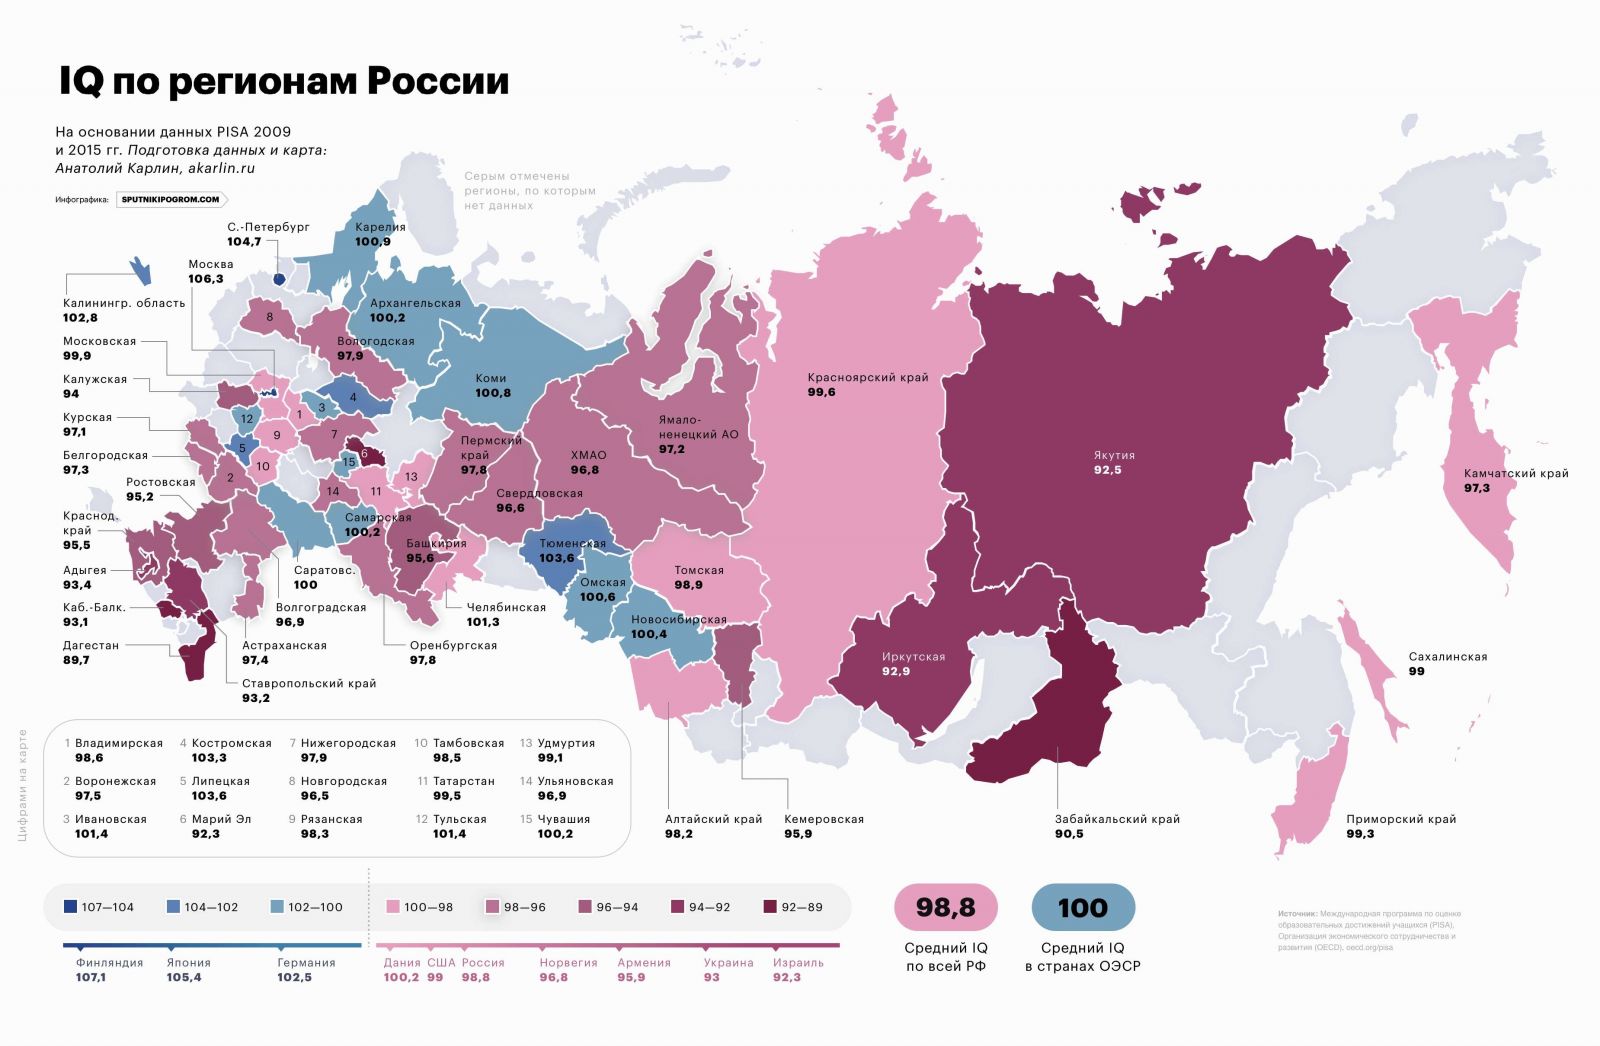 Уровень интеллекта липчан – один из самых высоких в России